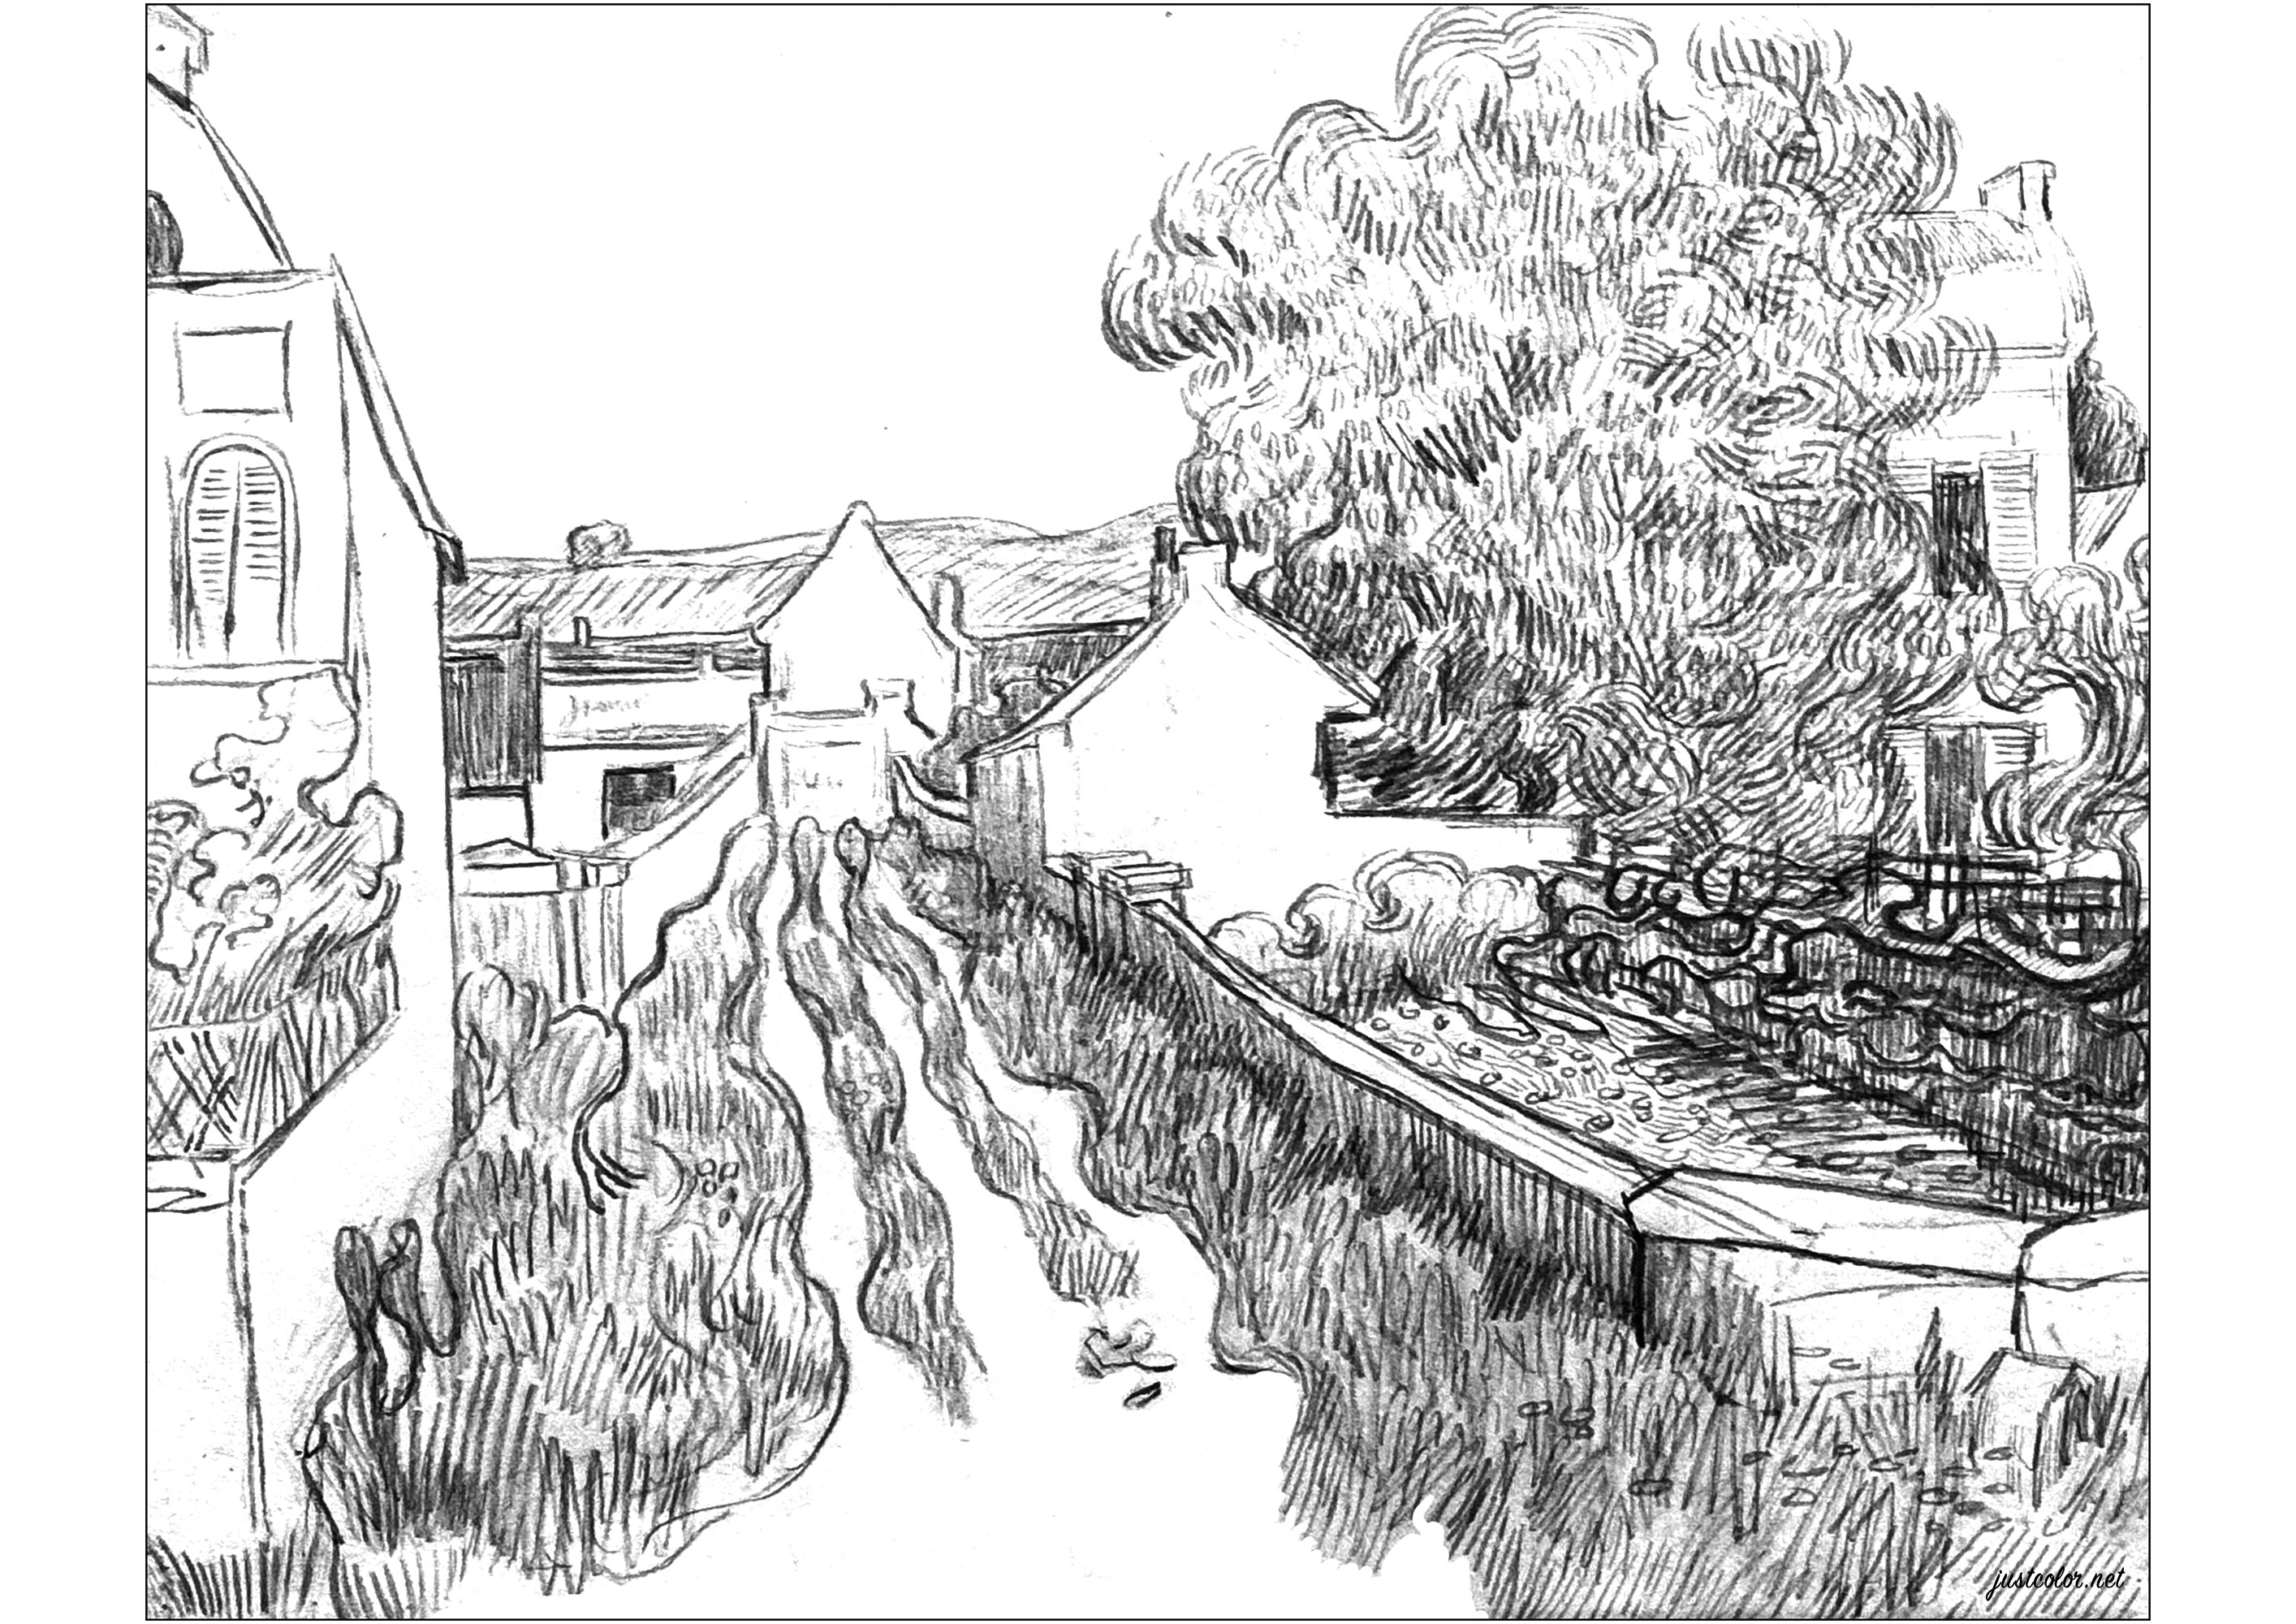 Dorfstraße (Skizze aus dem Jahr 1890, von Vincent Van Gogh). Kolorierung nach einer Skizze von Vincent Van Gogh aus dem Jahr 1890, die er am Ende seines Lebens in Auvers-sur-Oise malte, Künstler : Art'Isabelle